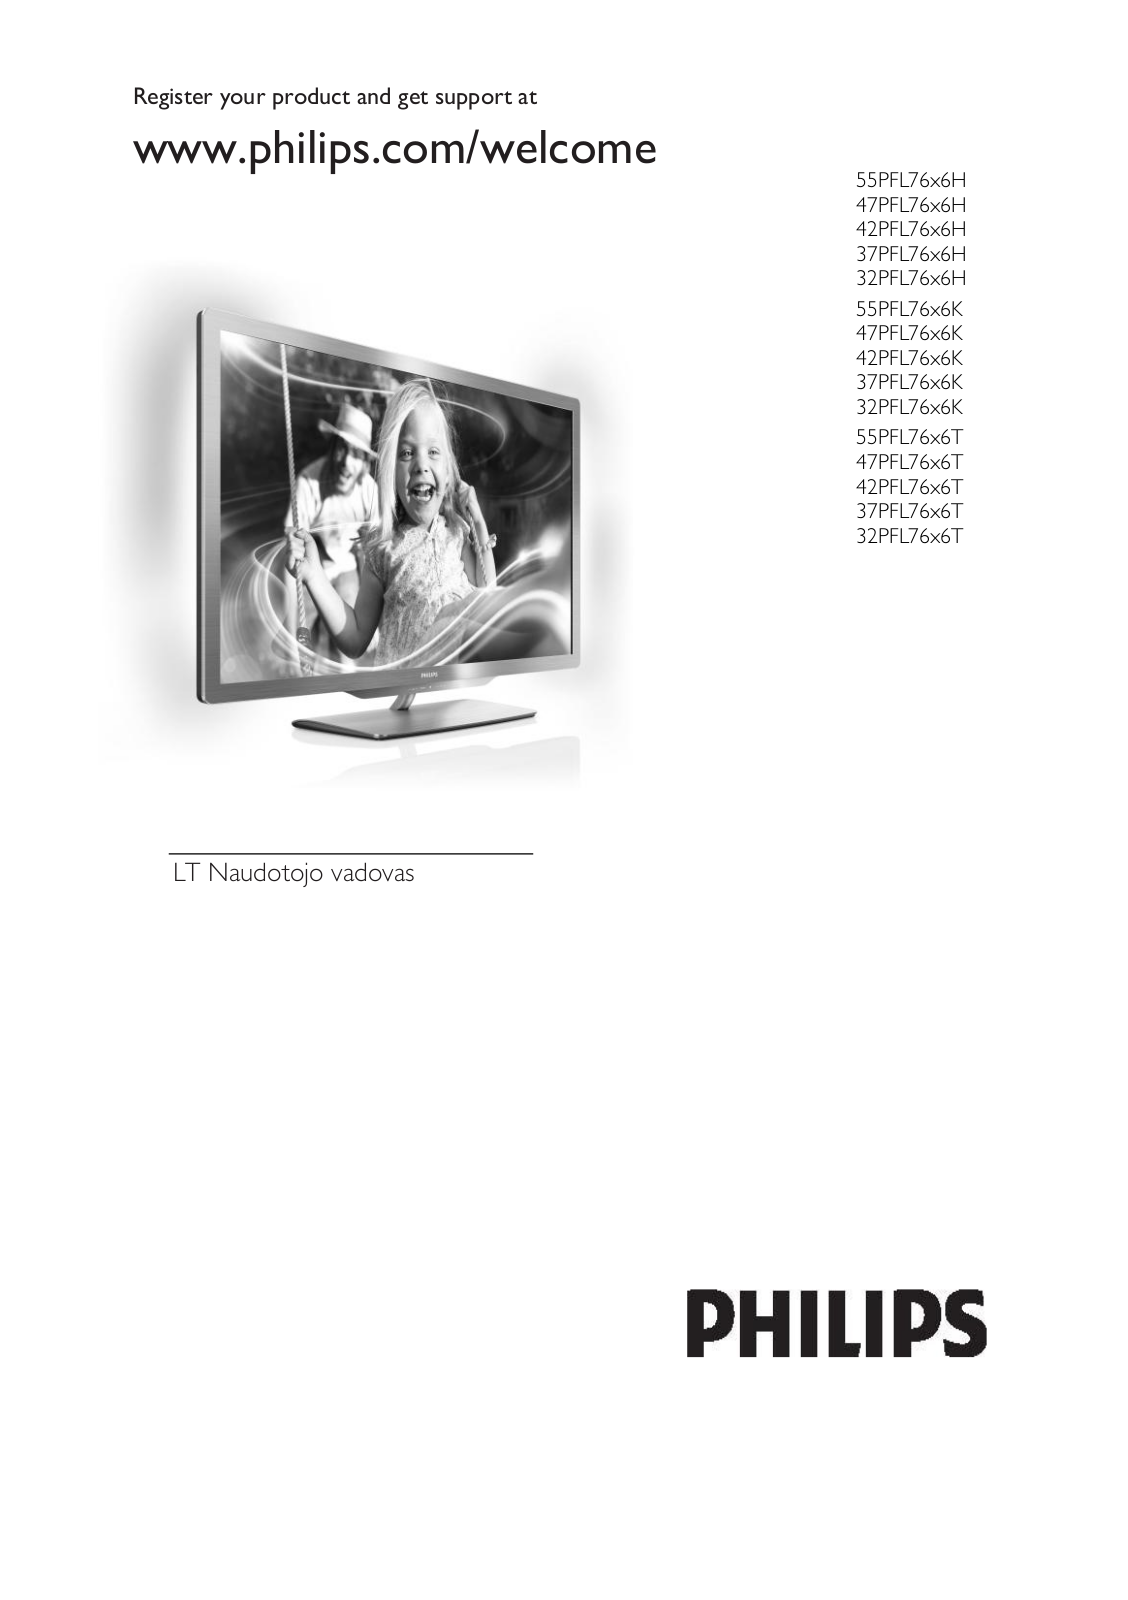 Philips 55PFL76x6H, 47PFL76x6H, 42PFL76x6H, 37PFL76x6H, 32PFL76x6H User Manual